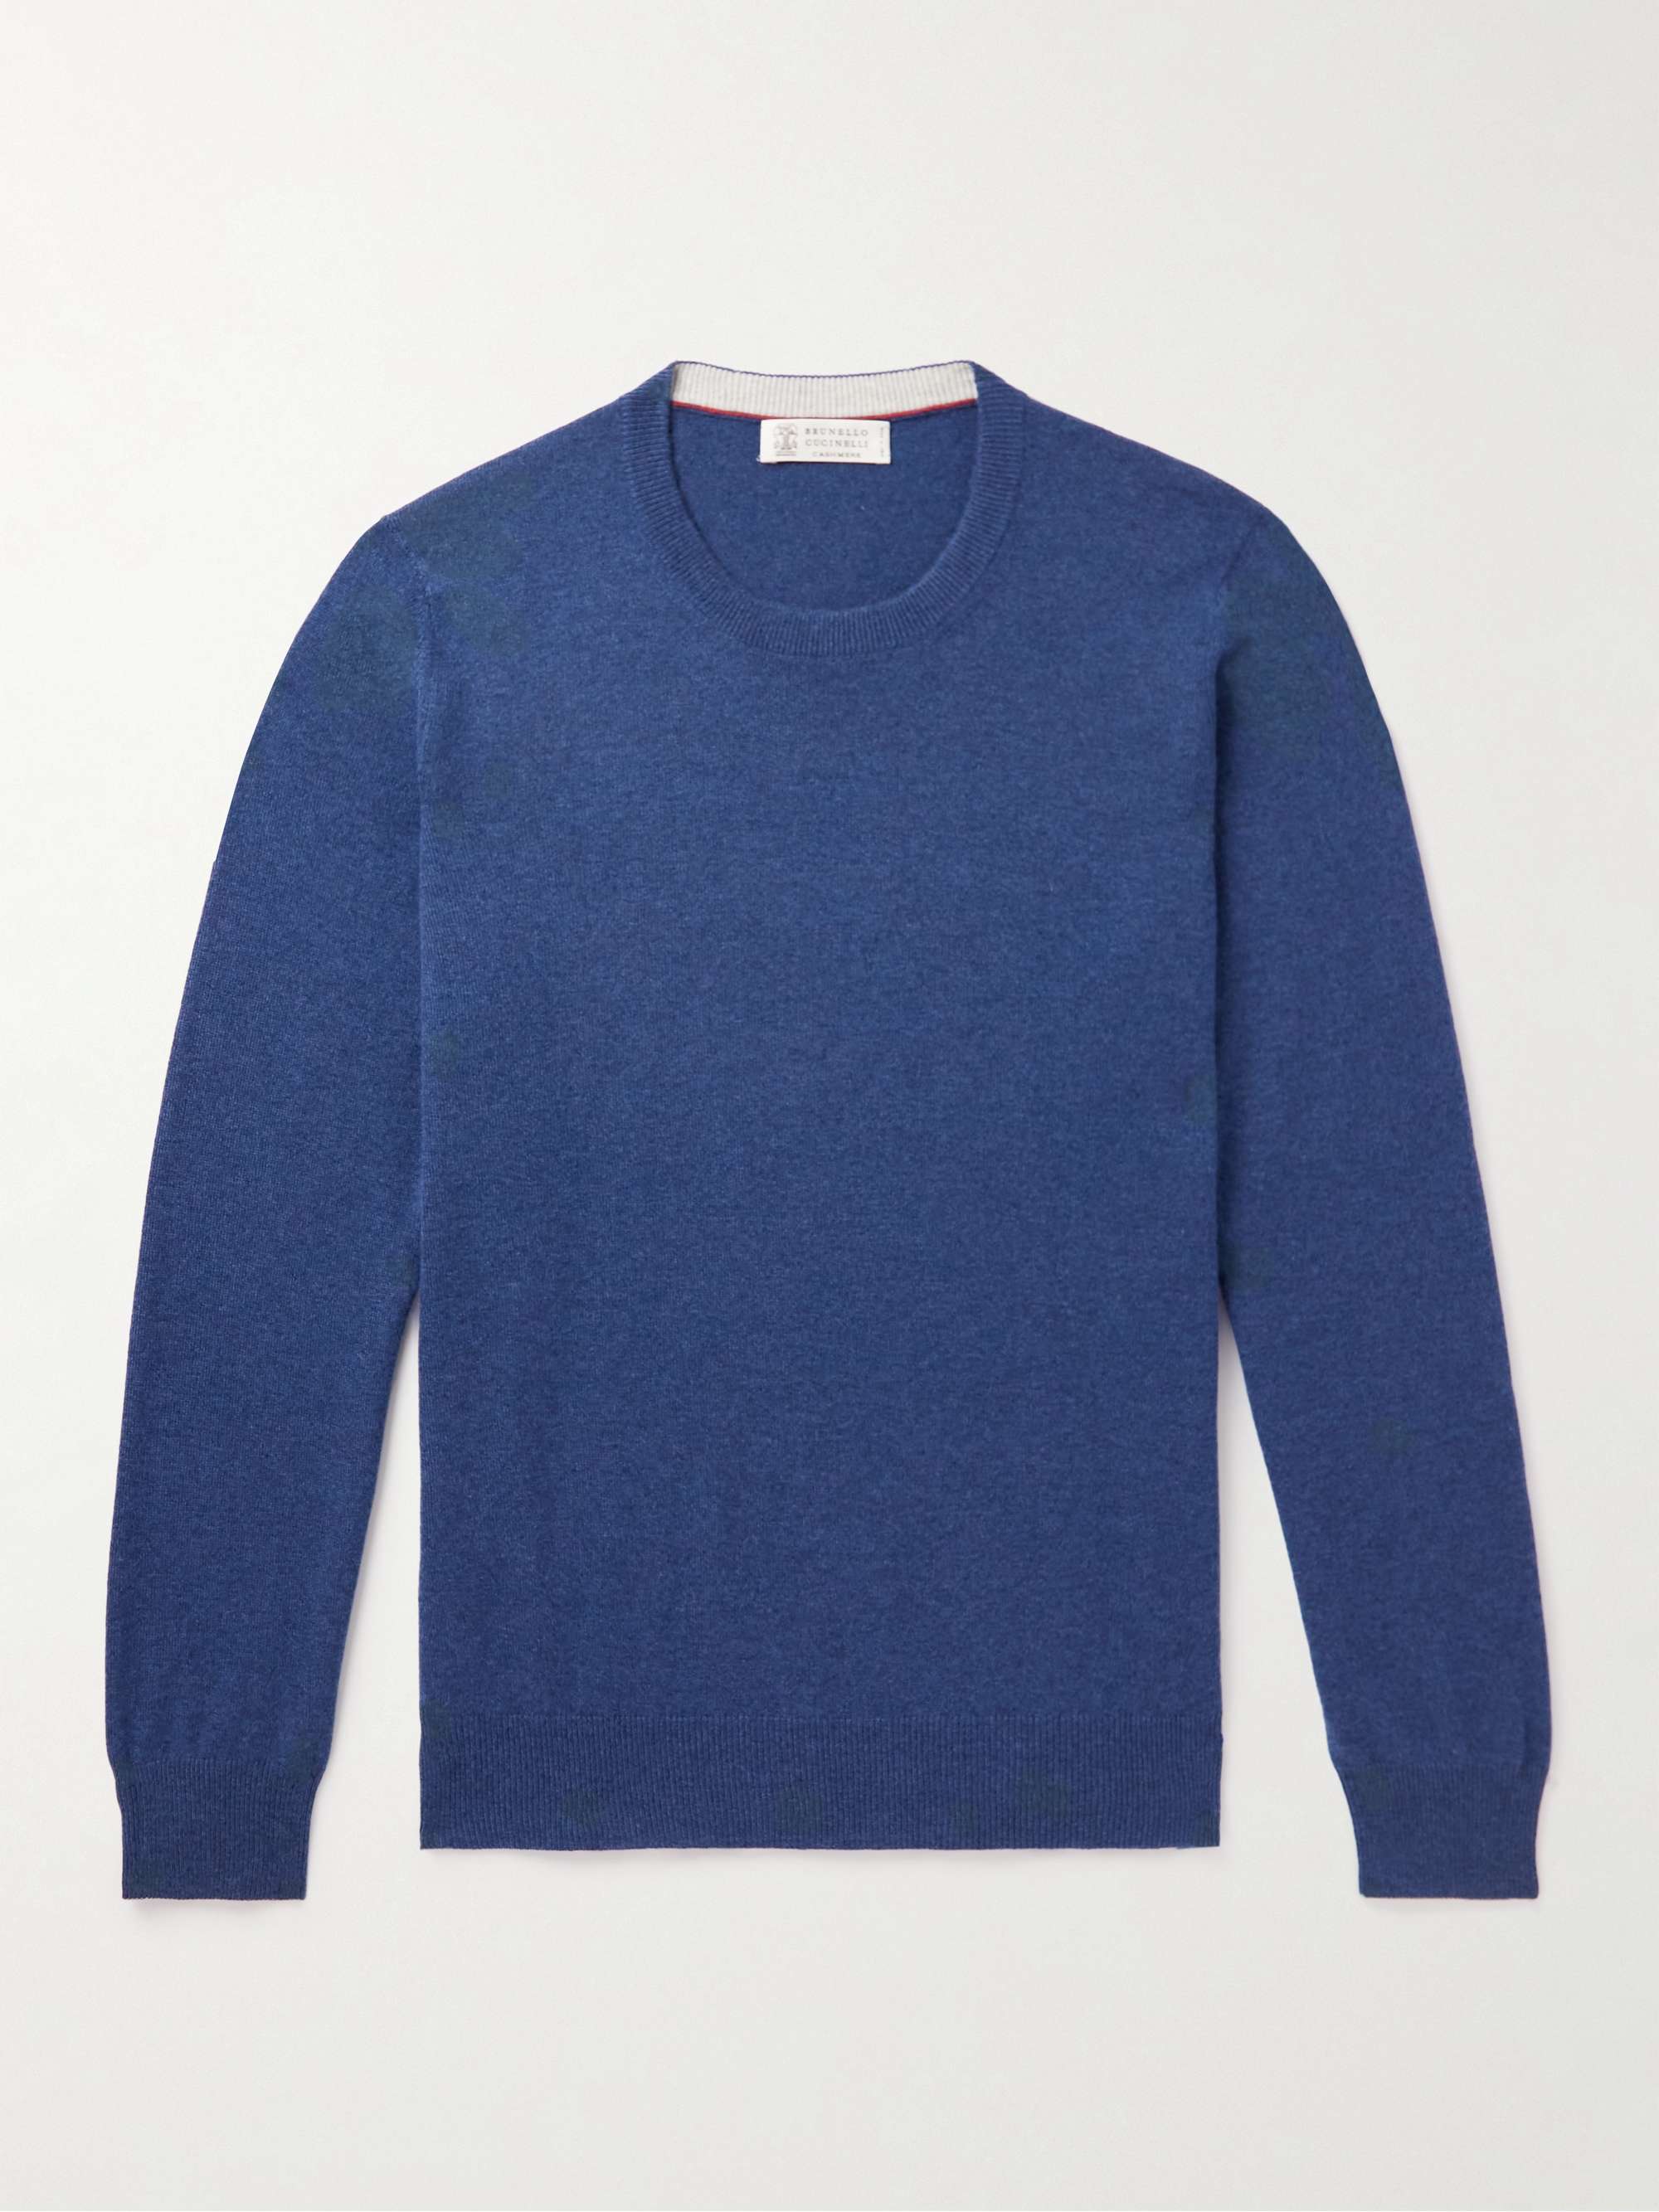 BRUNELLO CUCINELLI Cashmere Sweater for Men | MR PORTER